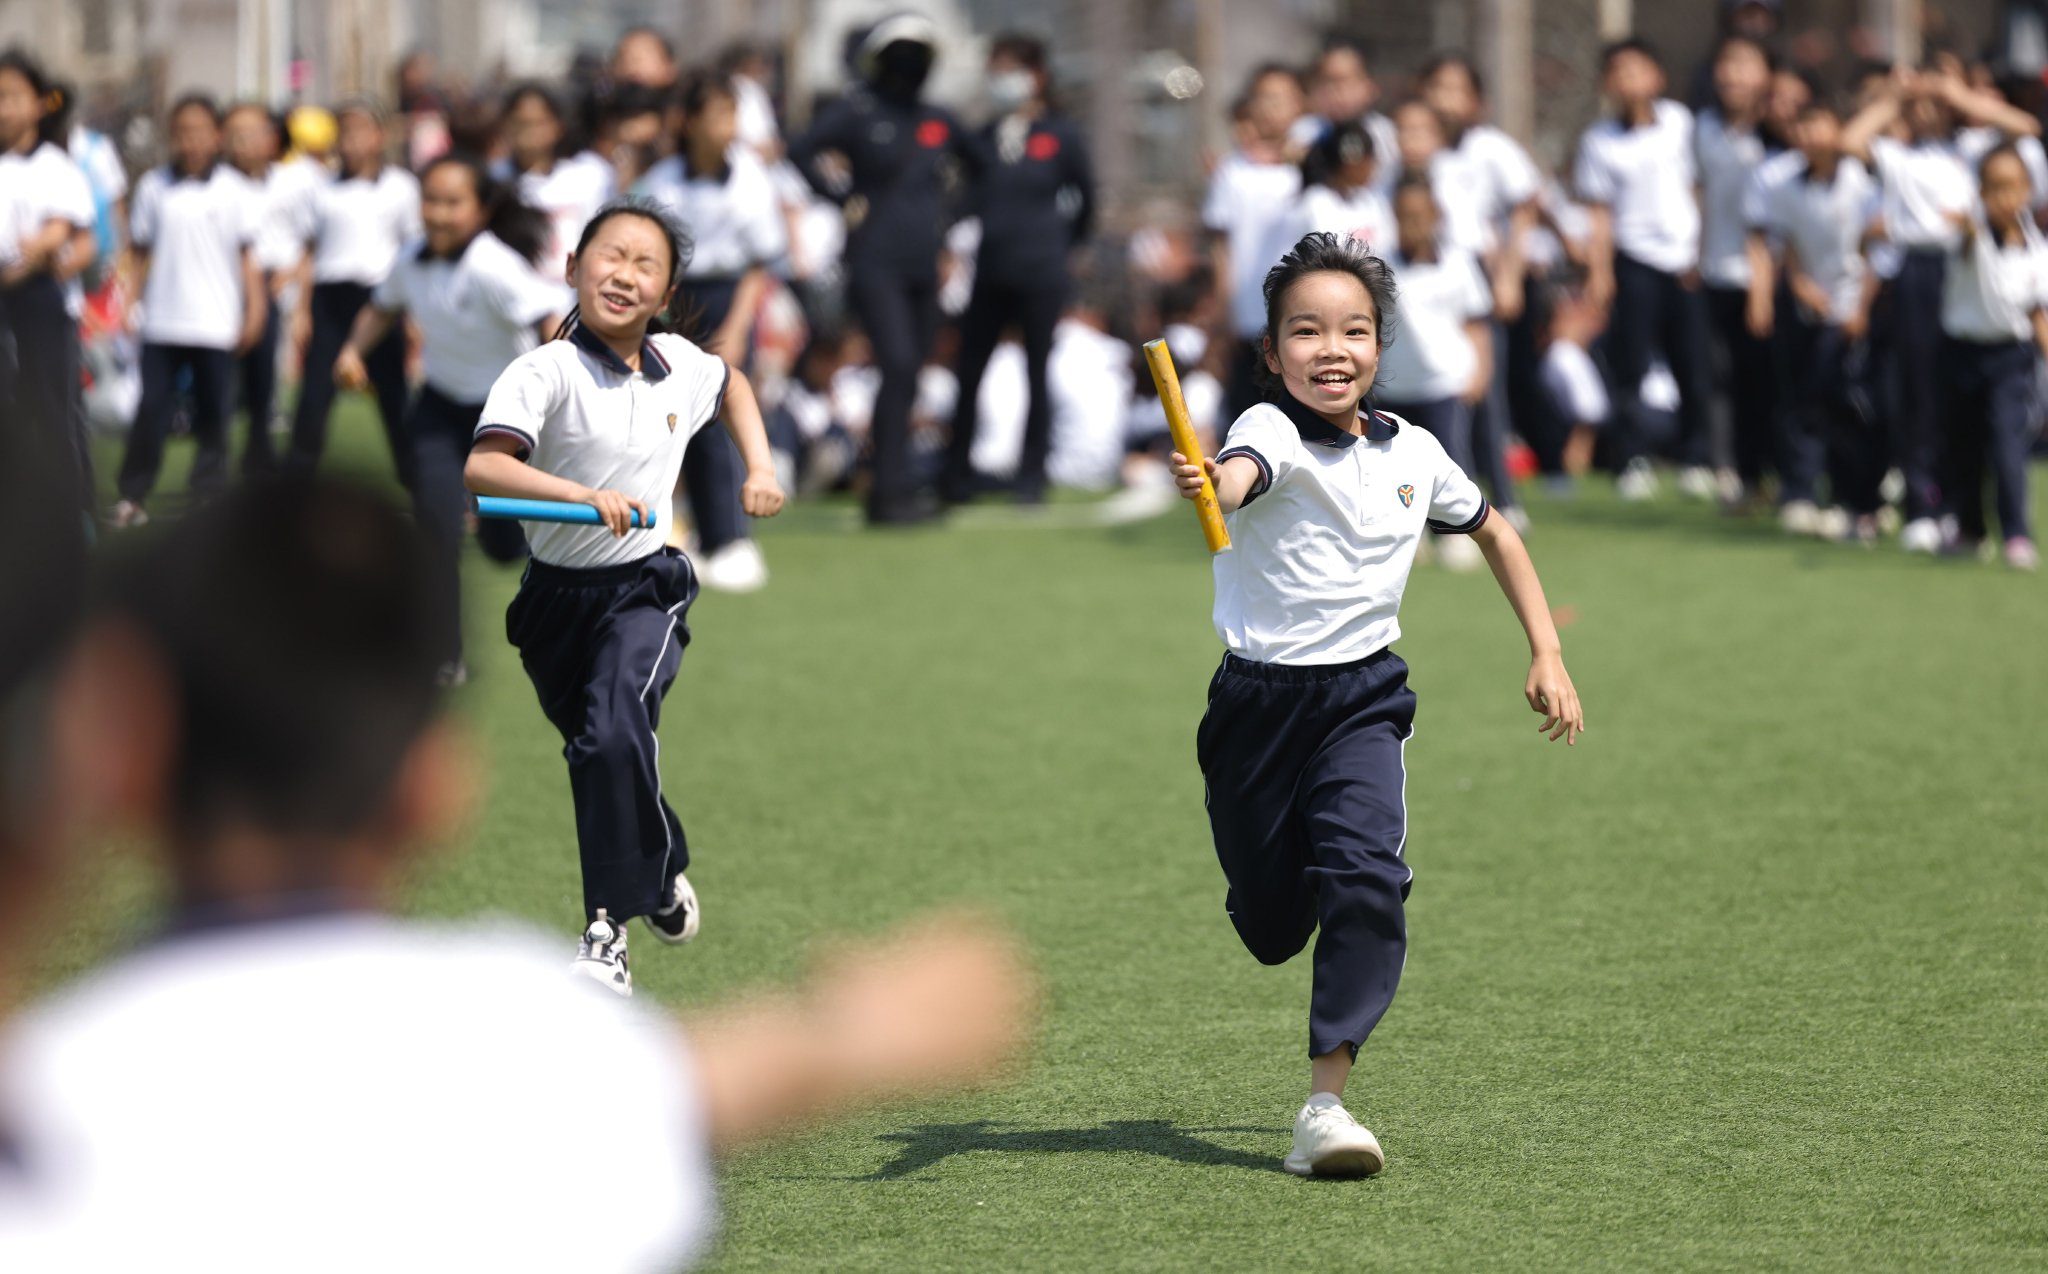 趣味賽也為運動會增添了更多的歡樂。新京報記者李木易 攝